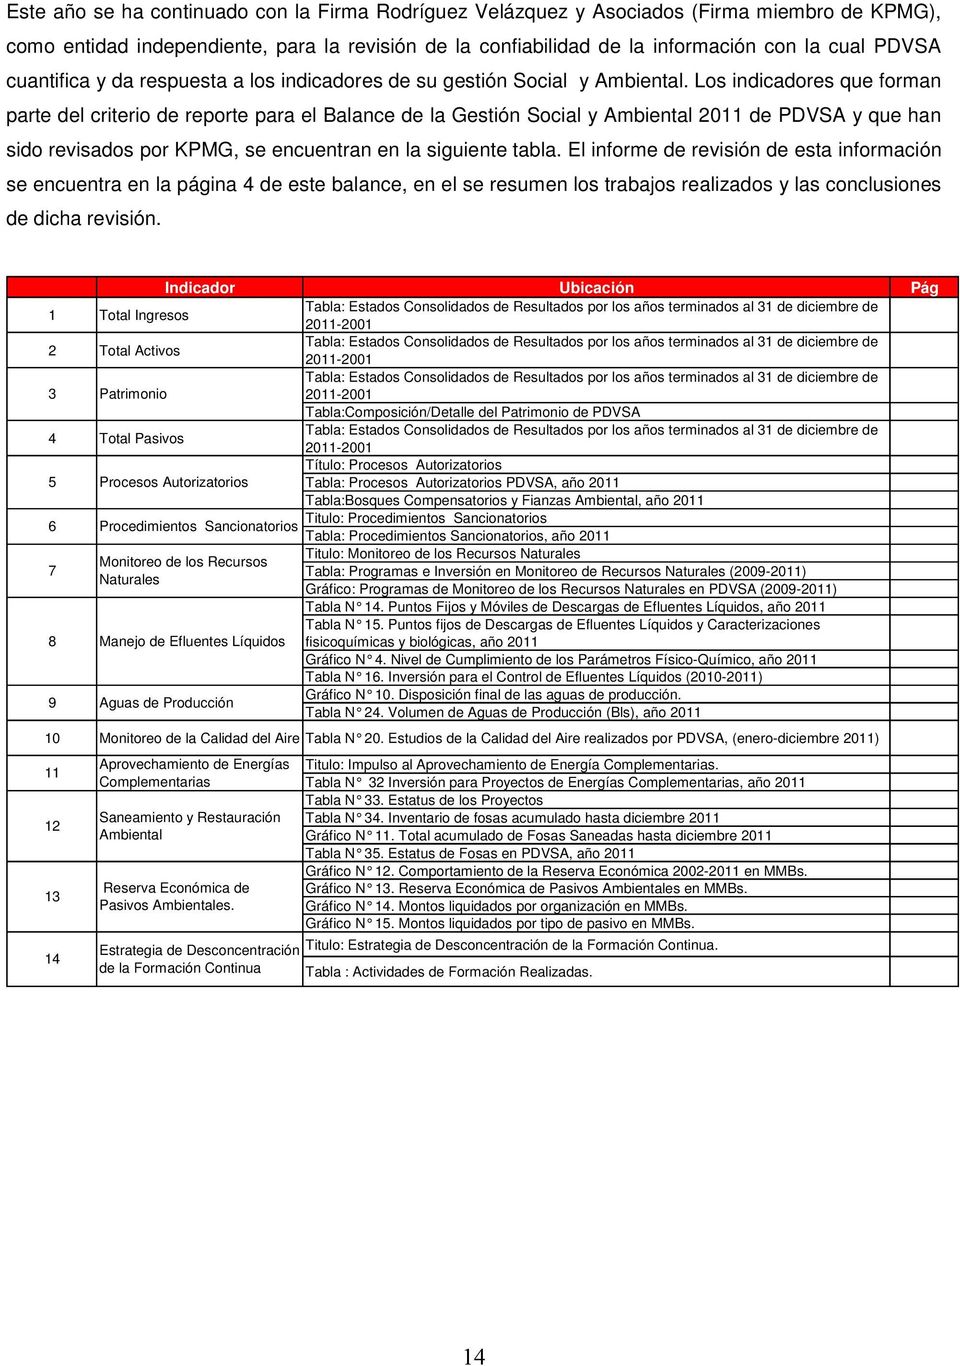 Los indicadores que forman parte del criterio de reporte para el Balance de la Gestión Social y Ambiental 2011 de PDVSA y que han sido revisados por KPMG, se encuentran en la siguiente tabla.